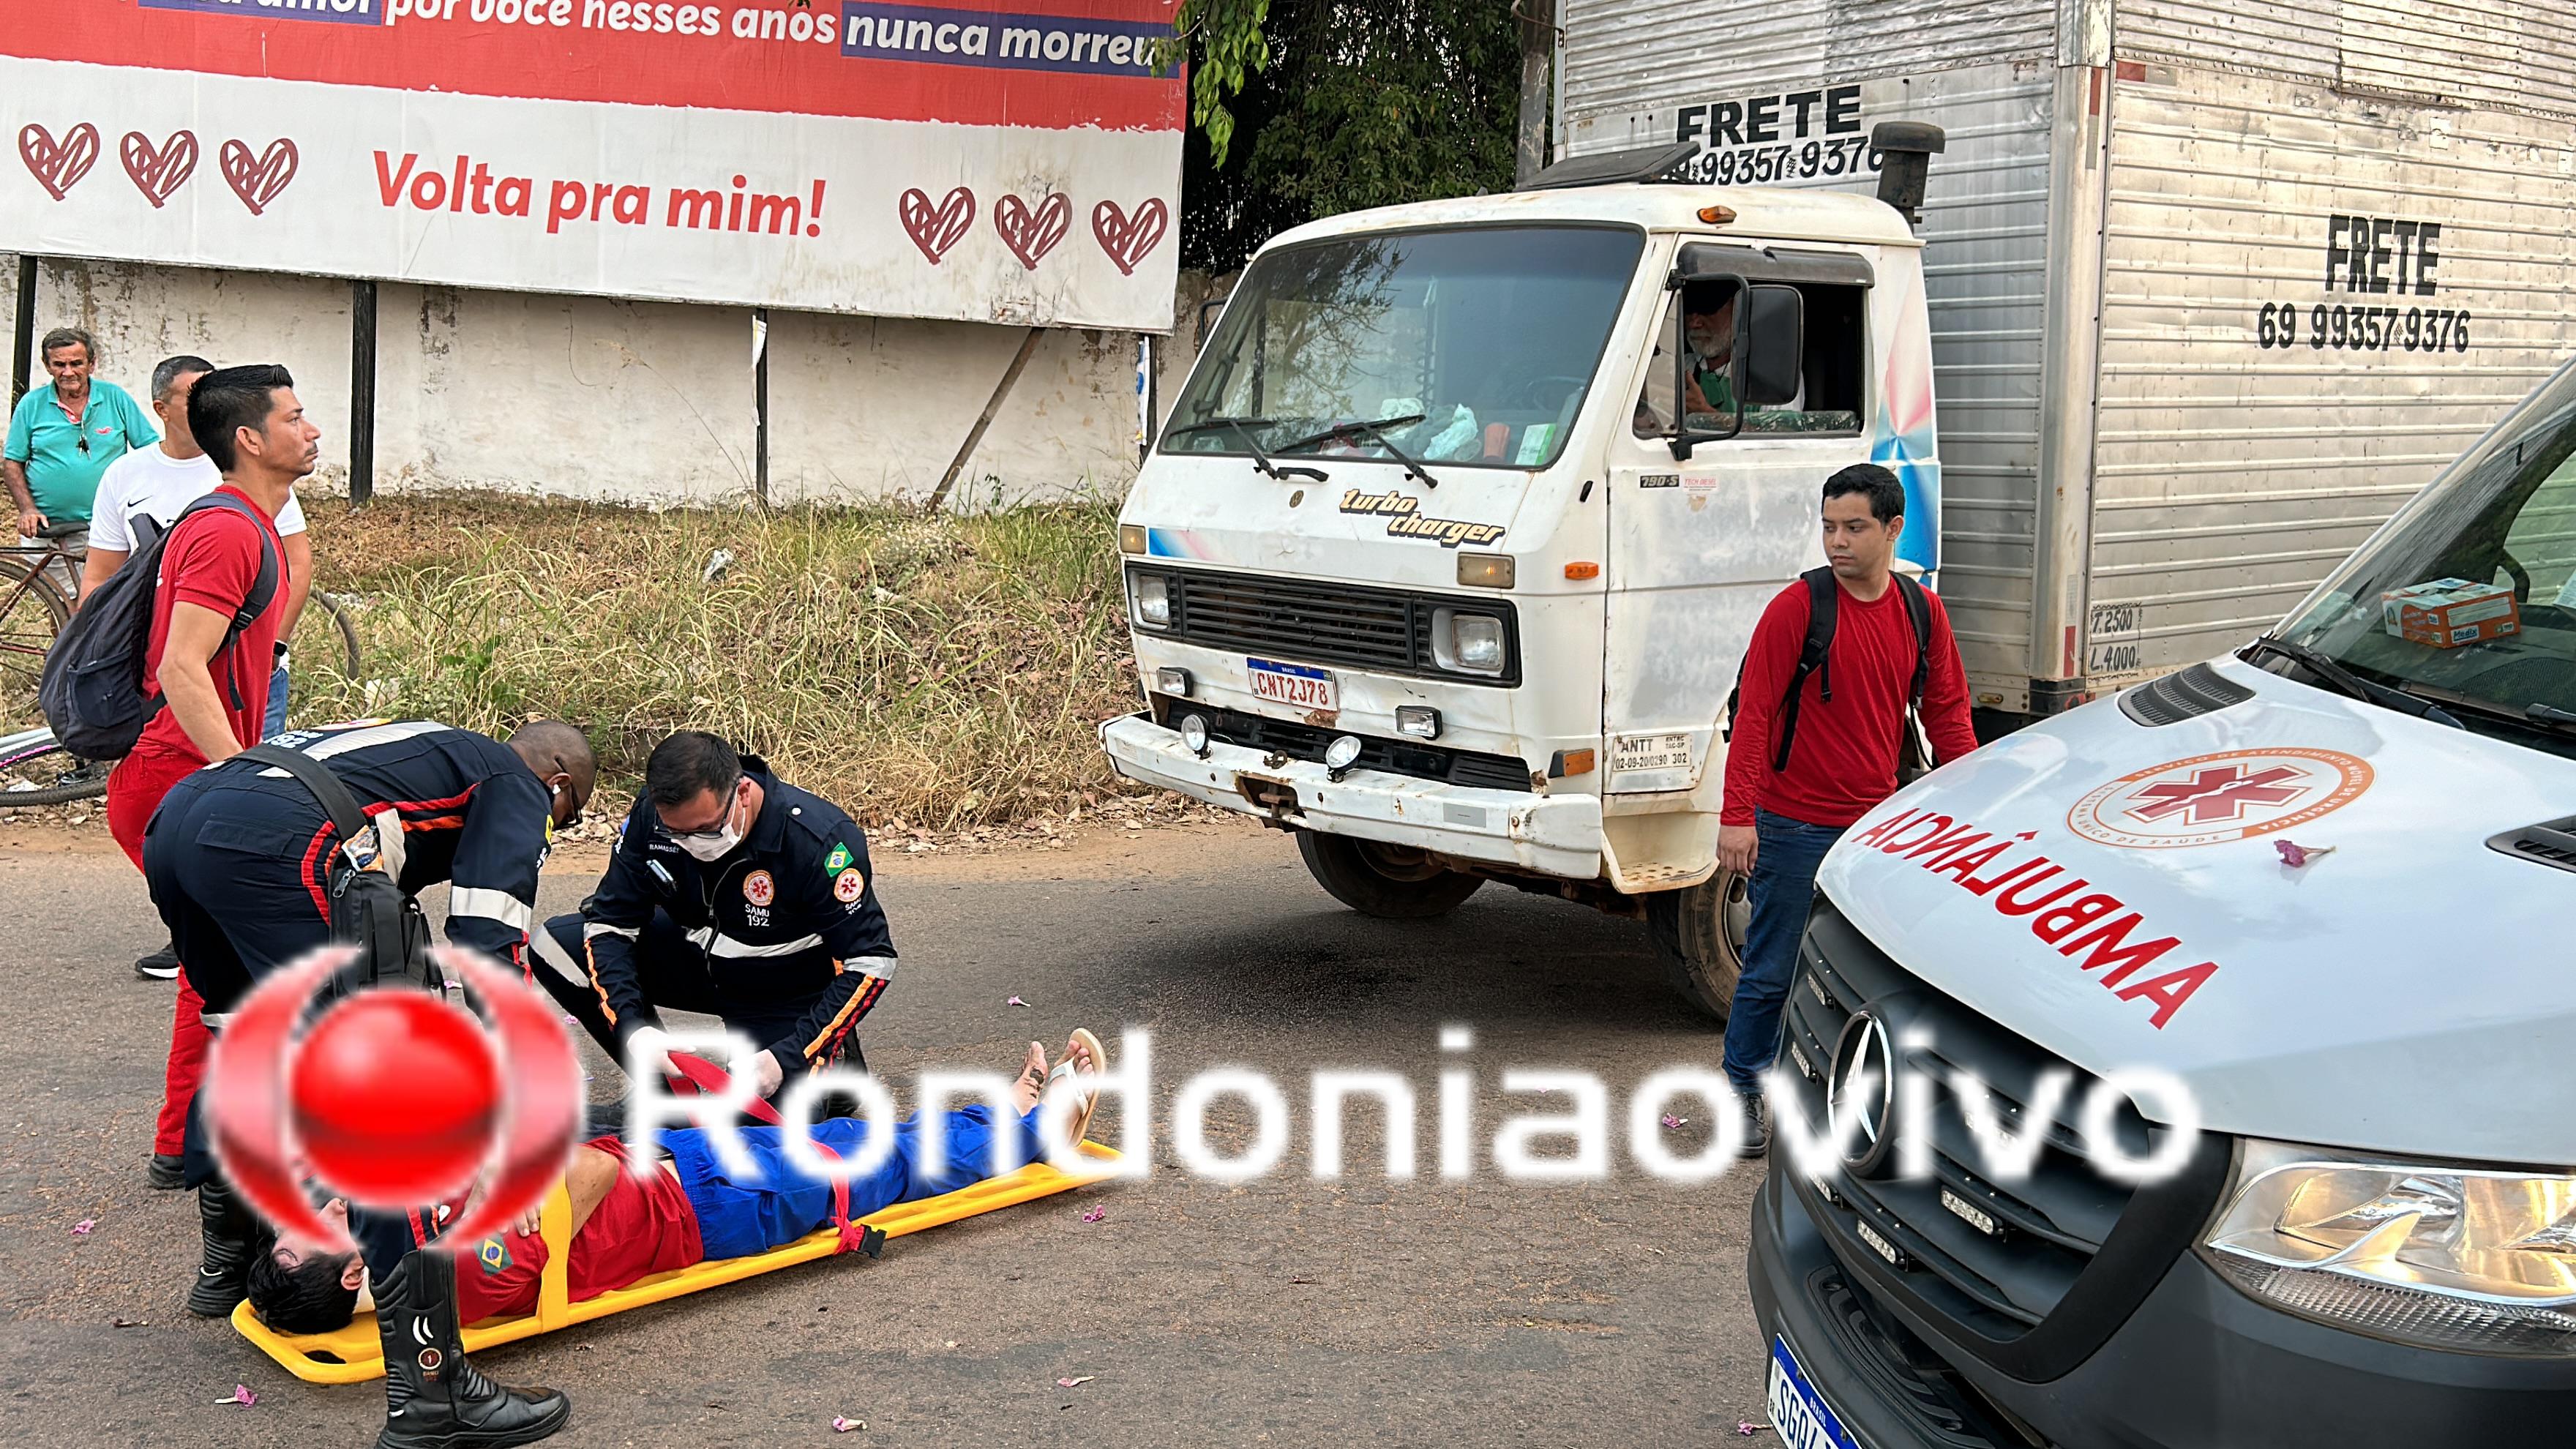 URGENTE: Caminhão atropela ciclista na Avenida Rio de Janeiro